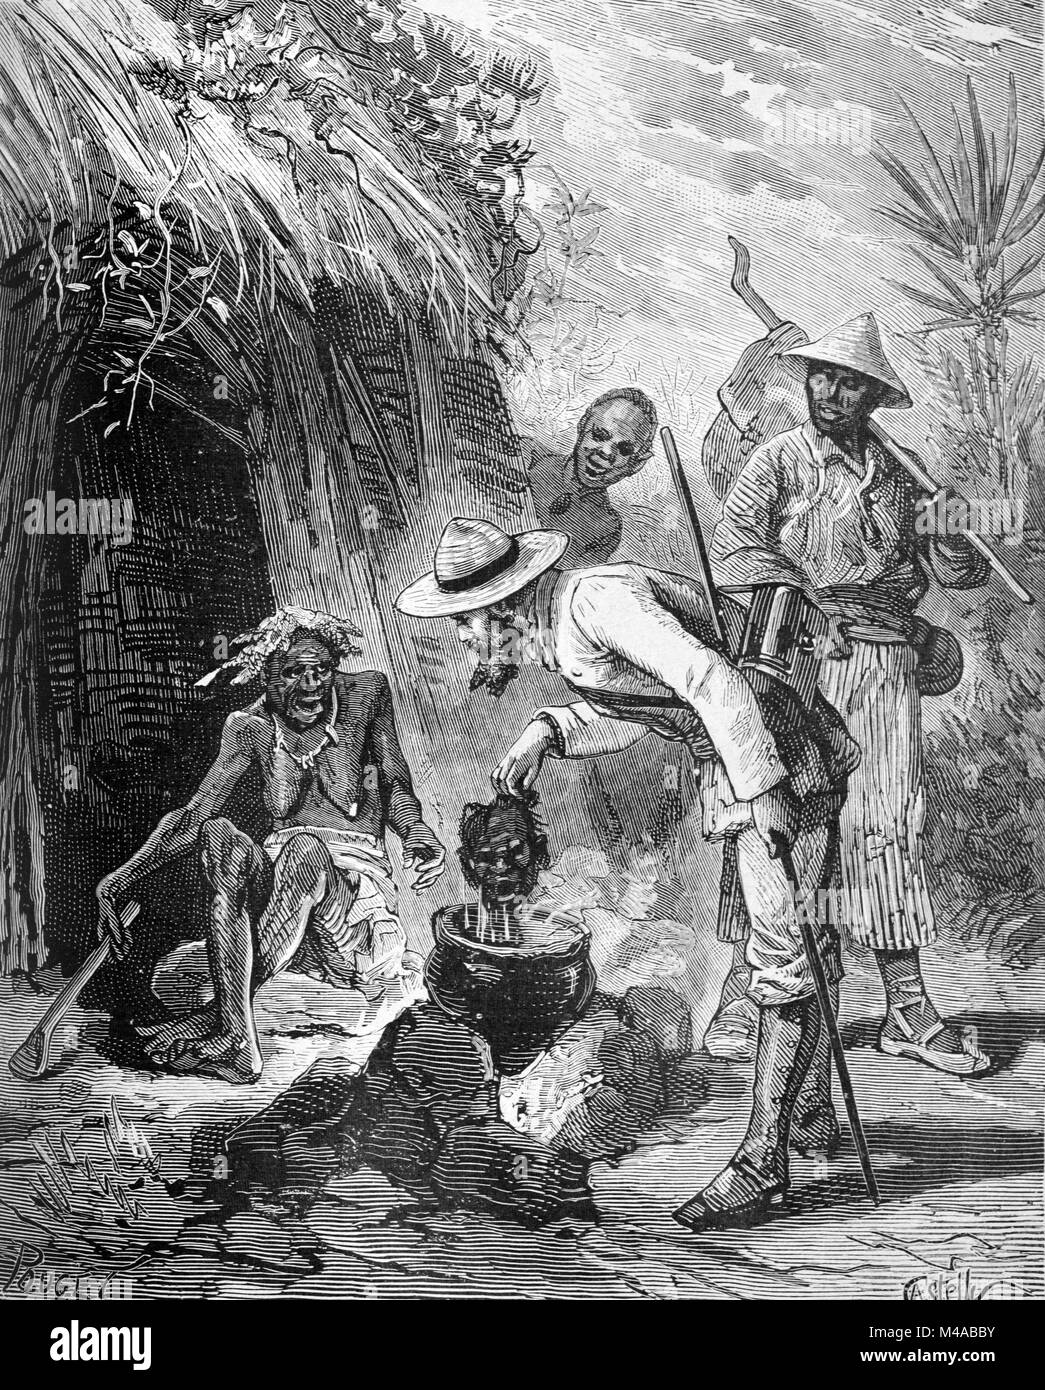 Indigene Cannibal oder Kannibalismus in Cayenne aka Guyana oder Französisch Guayana. Eine europäische Siedler, Koloniale oder Explorer entdeckt einen menschlichen Kopf Kochen in einem Kochtopf im Amazonas oder südamerikanischen Dschungel (Gravur, 1880) Stockfoto